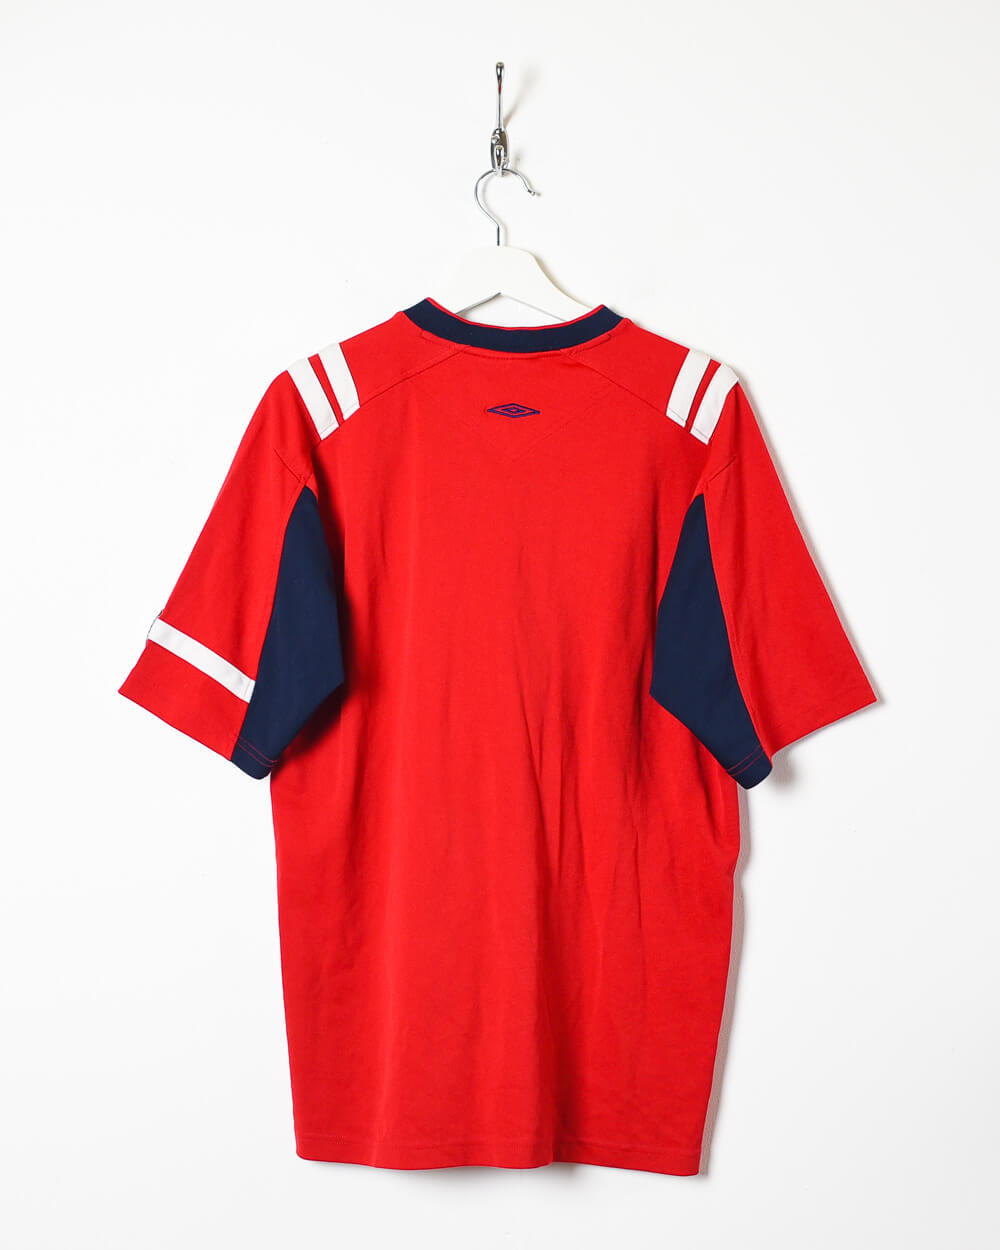 Red Umbro England 2004/05 Training Football Shirt - Large